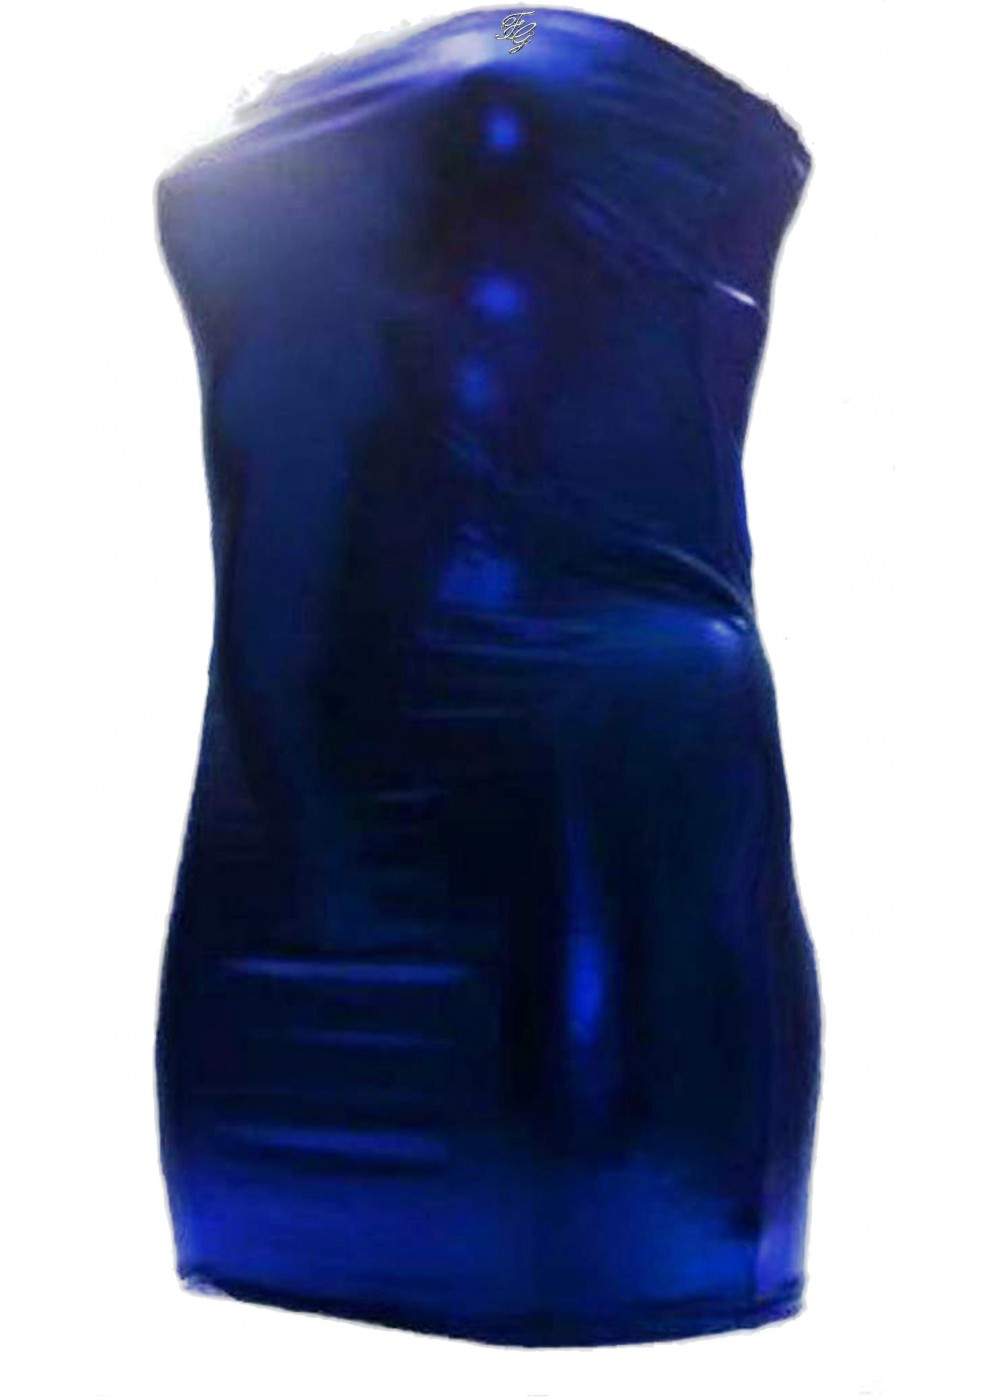 Blaues Bandeau Kleid Größen 44 - 52 Längen 50cm - 75cm ab 25,00 € - 